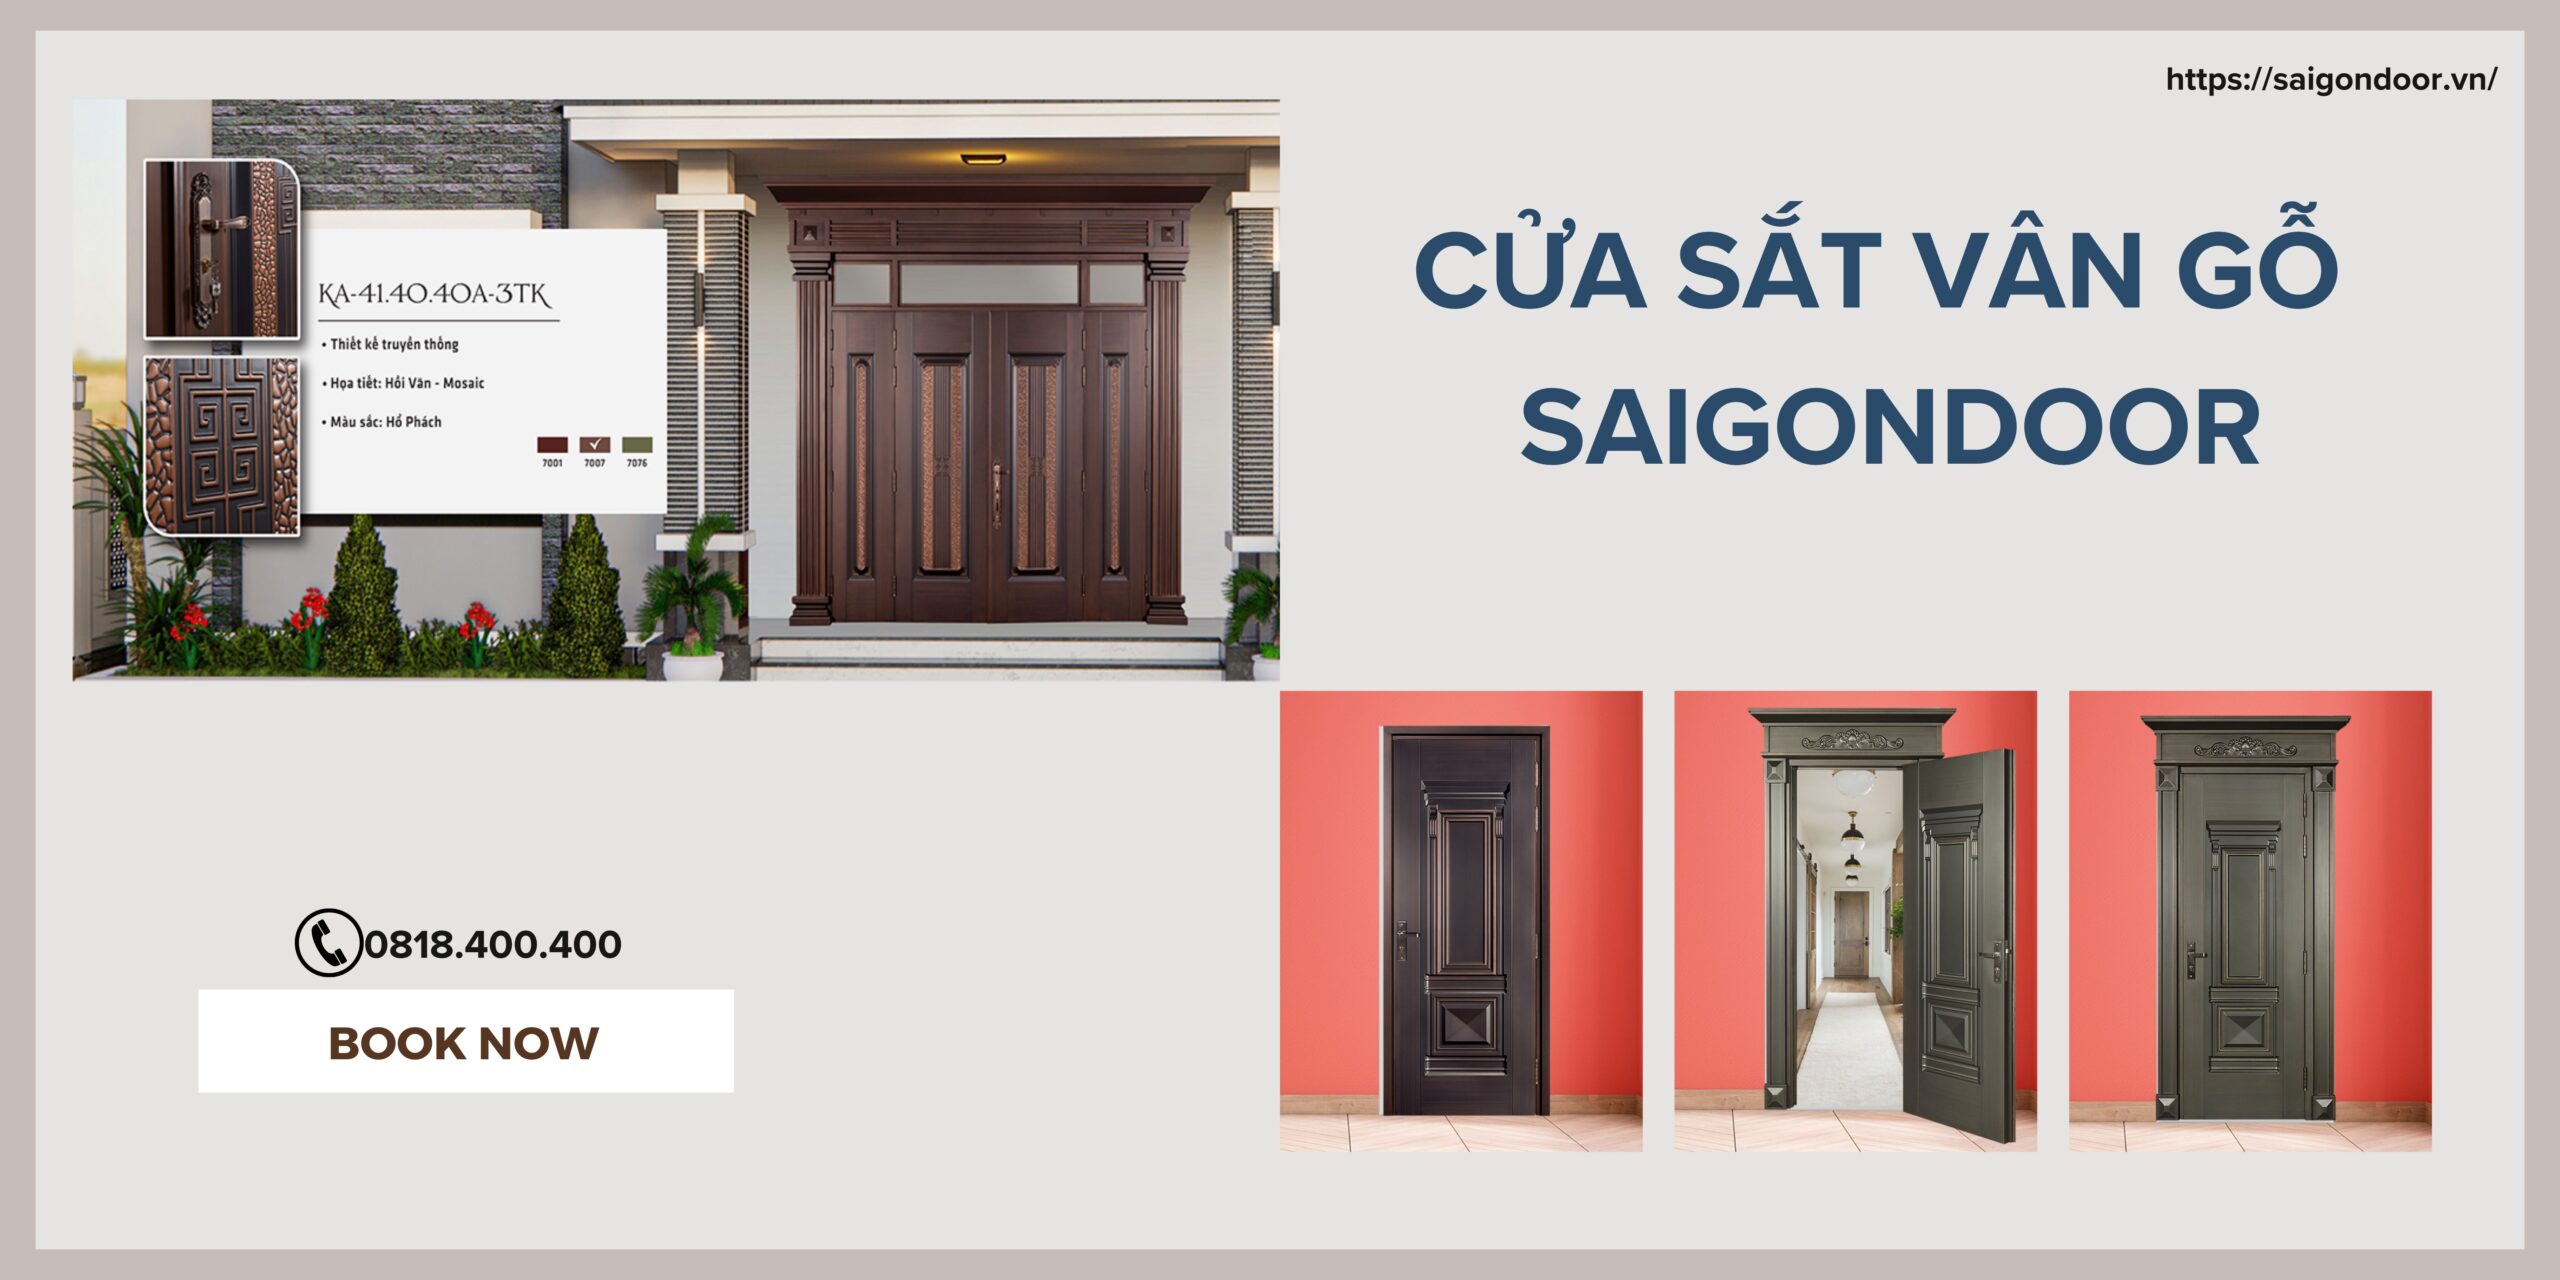 Lựa chọn địa chỉ mua hàng uy tín tại Sài Gòn Door